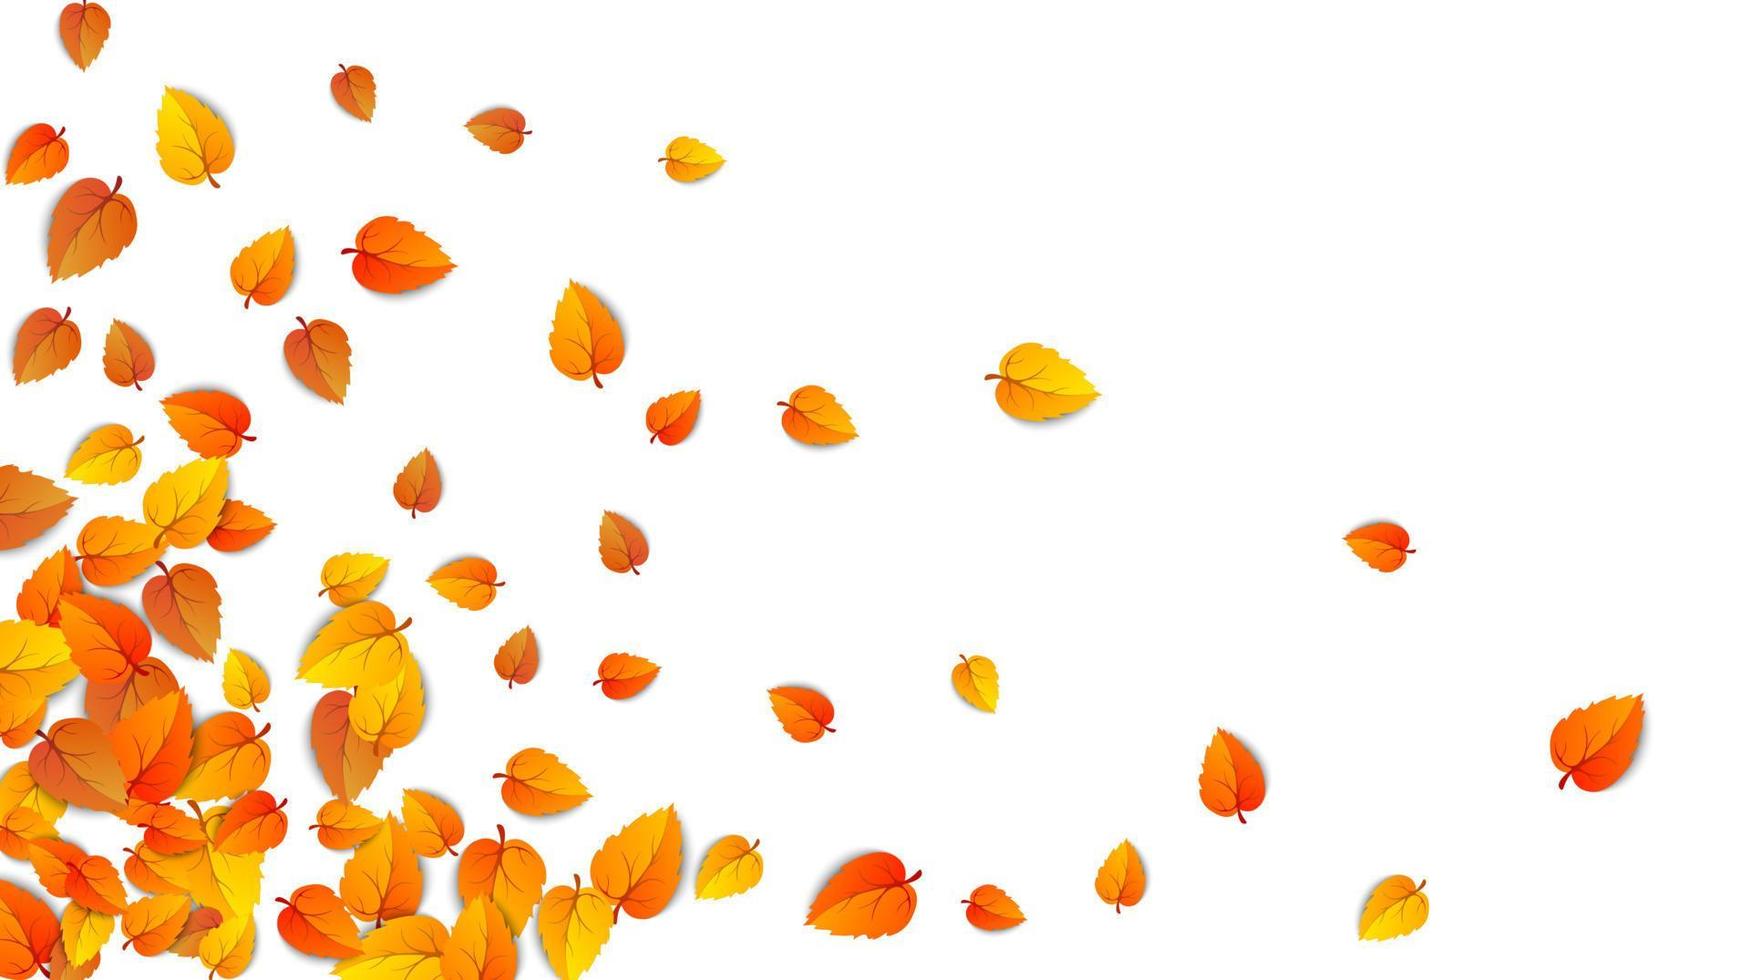 nahtlose Herbstlaub horizontale Banner isoliert auf weißem Hintergrund. Werbevorlage mit goldenem Herbstblatt. Farbenmuster der Herbstsaison. herbstlicher naturlaubtapetenrahmen. Vektor